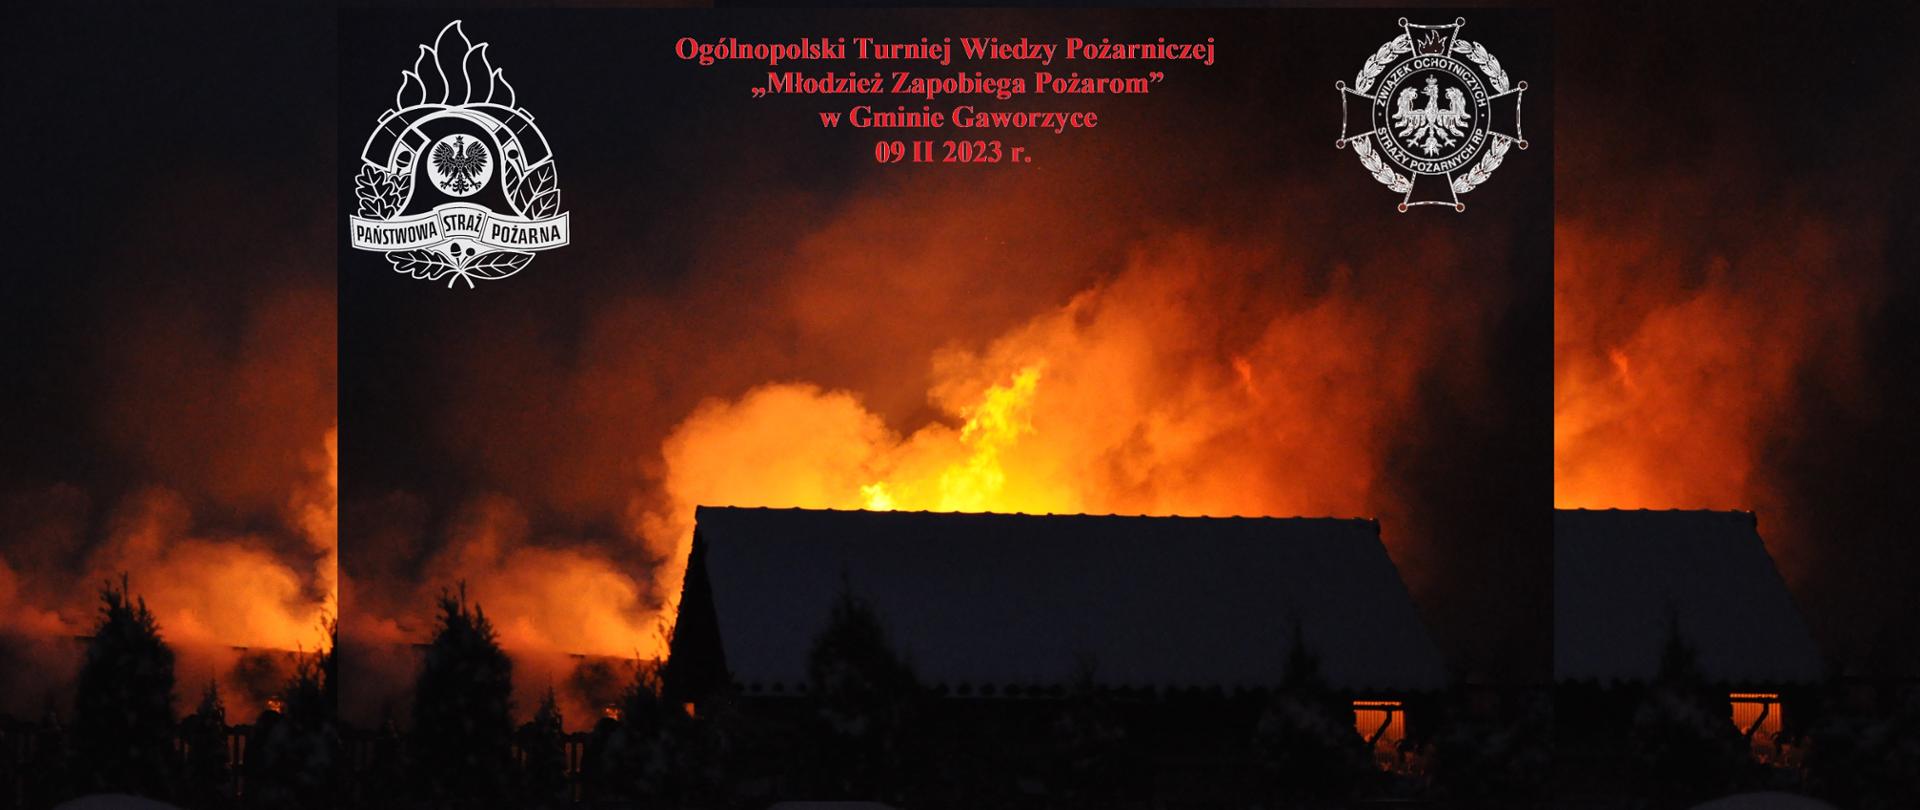 Grafika informacyjna o Ogólnopolskim Turnieju Wiedzy Pożarniczej „Młodzież Zapobiega Pożarom” w Gaworzycach - pożar zabudowań nocą